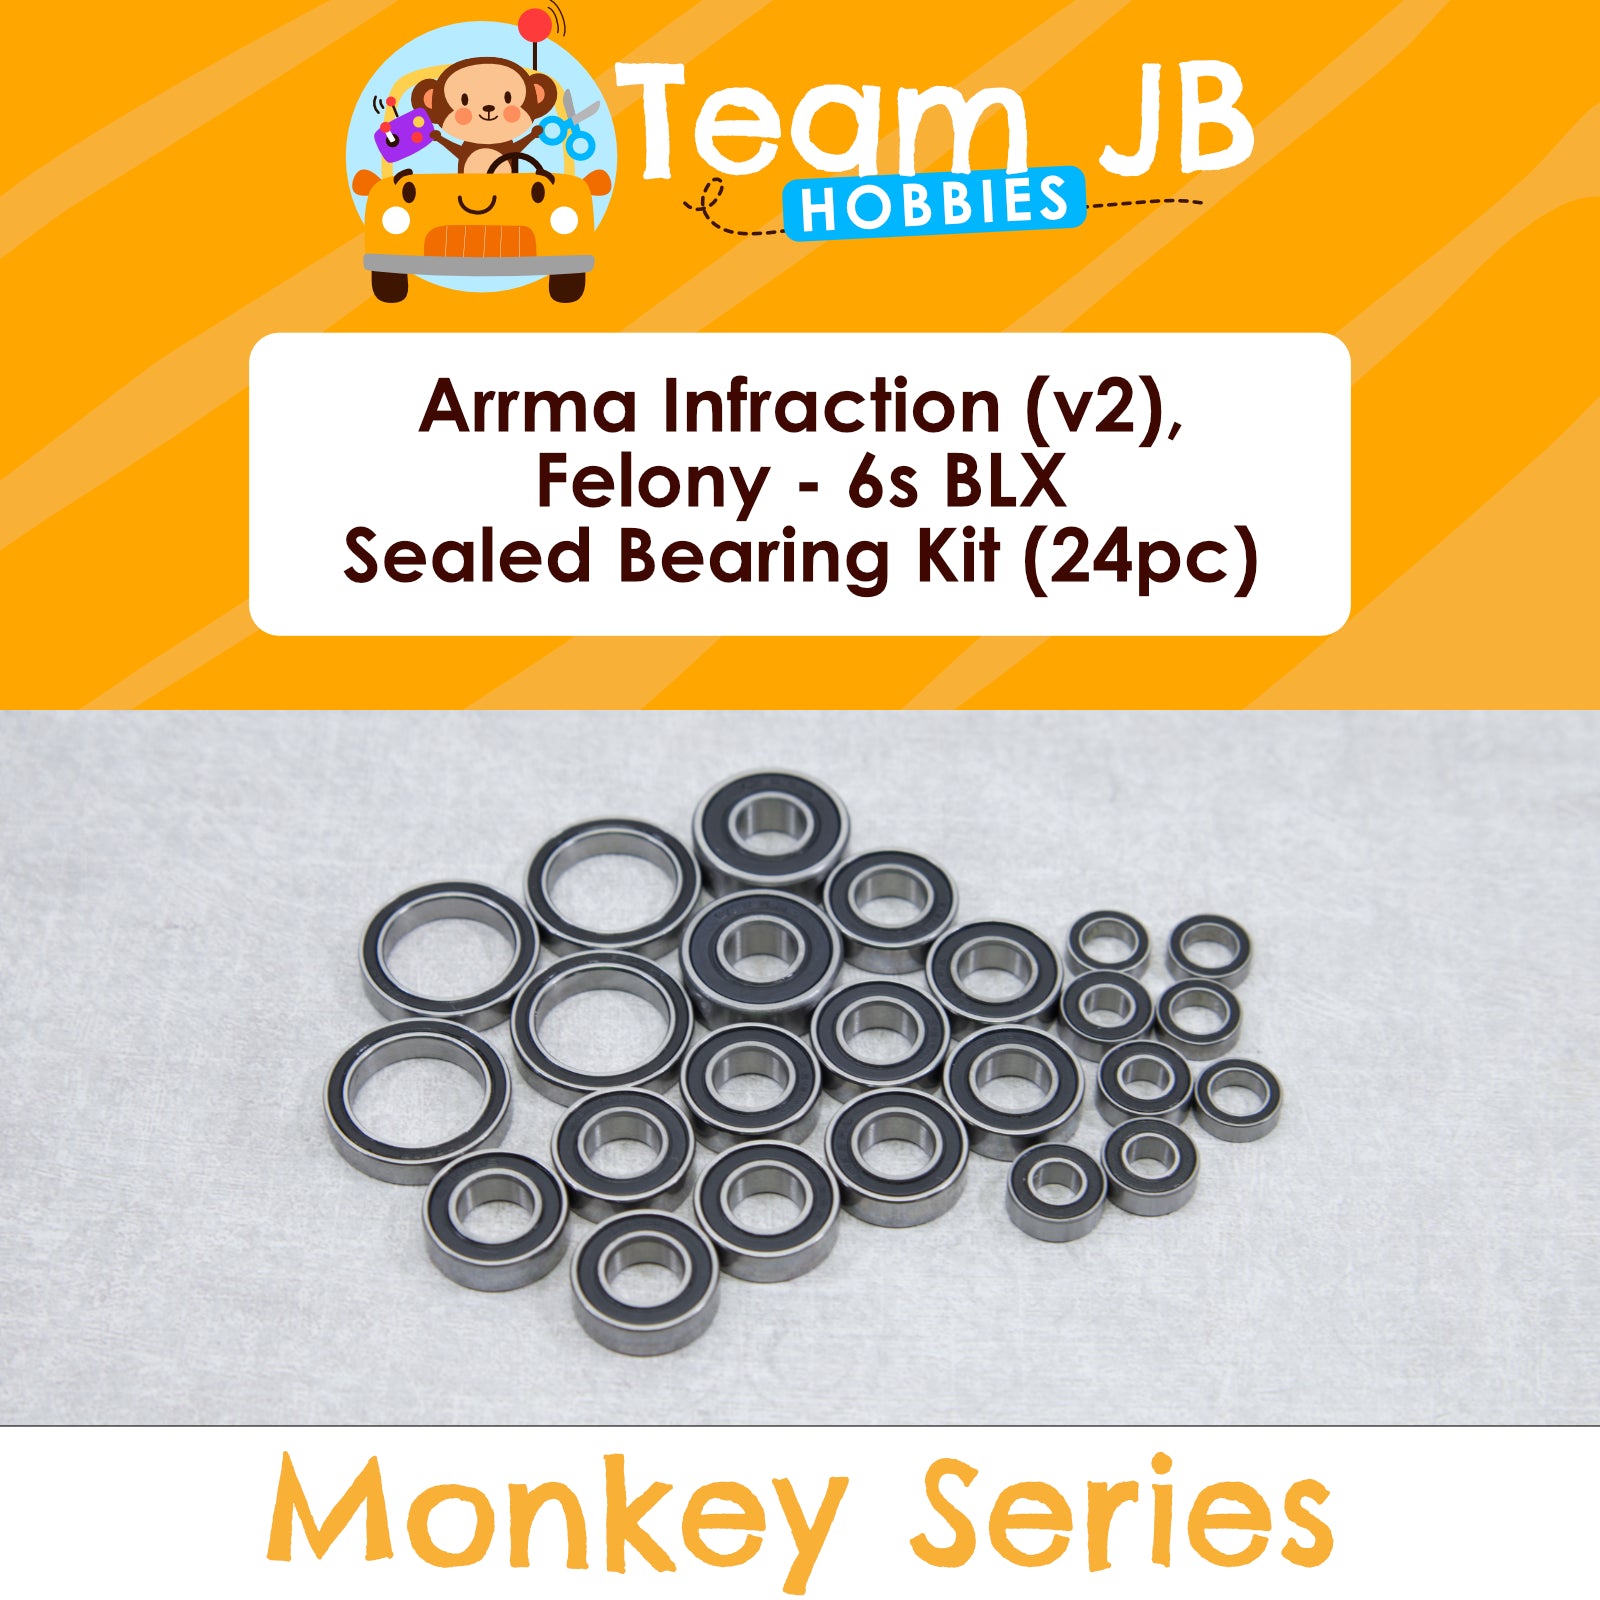 Arrma Infraction (v2), Felony - 6s BLX Sealed Bearing Kit